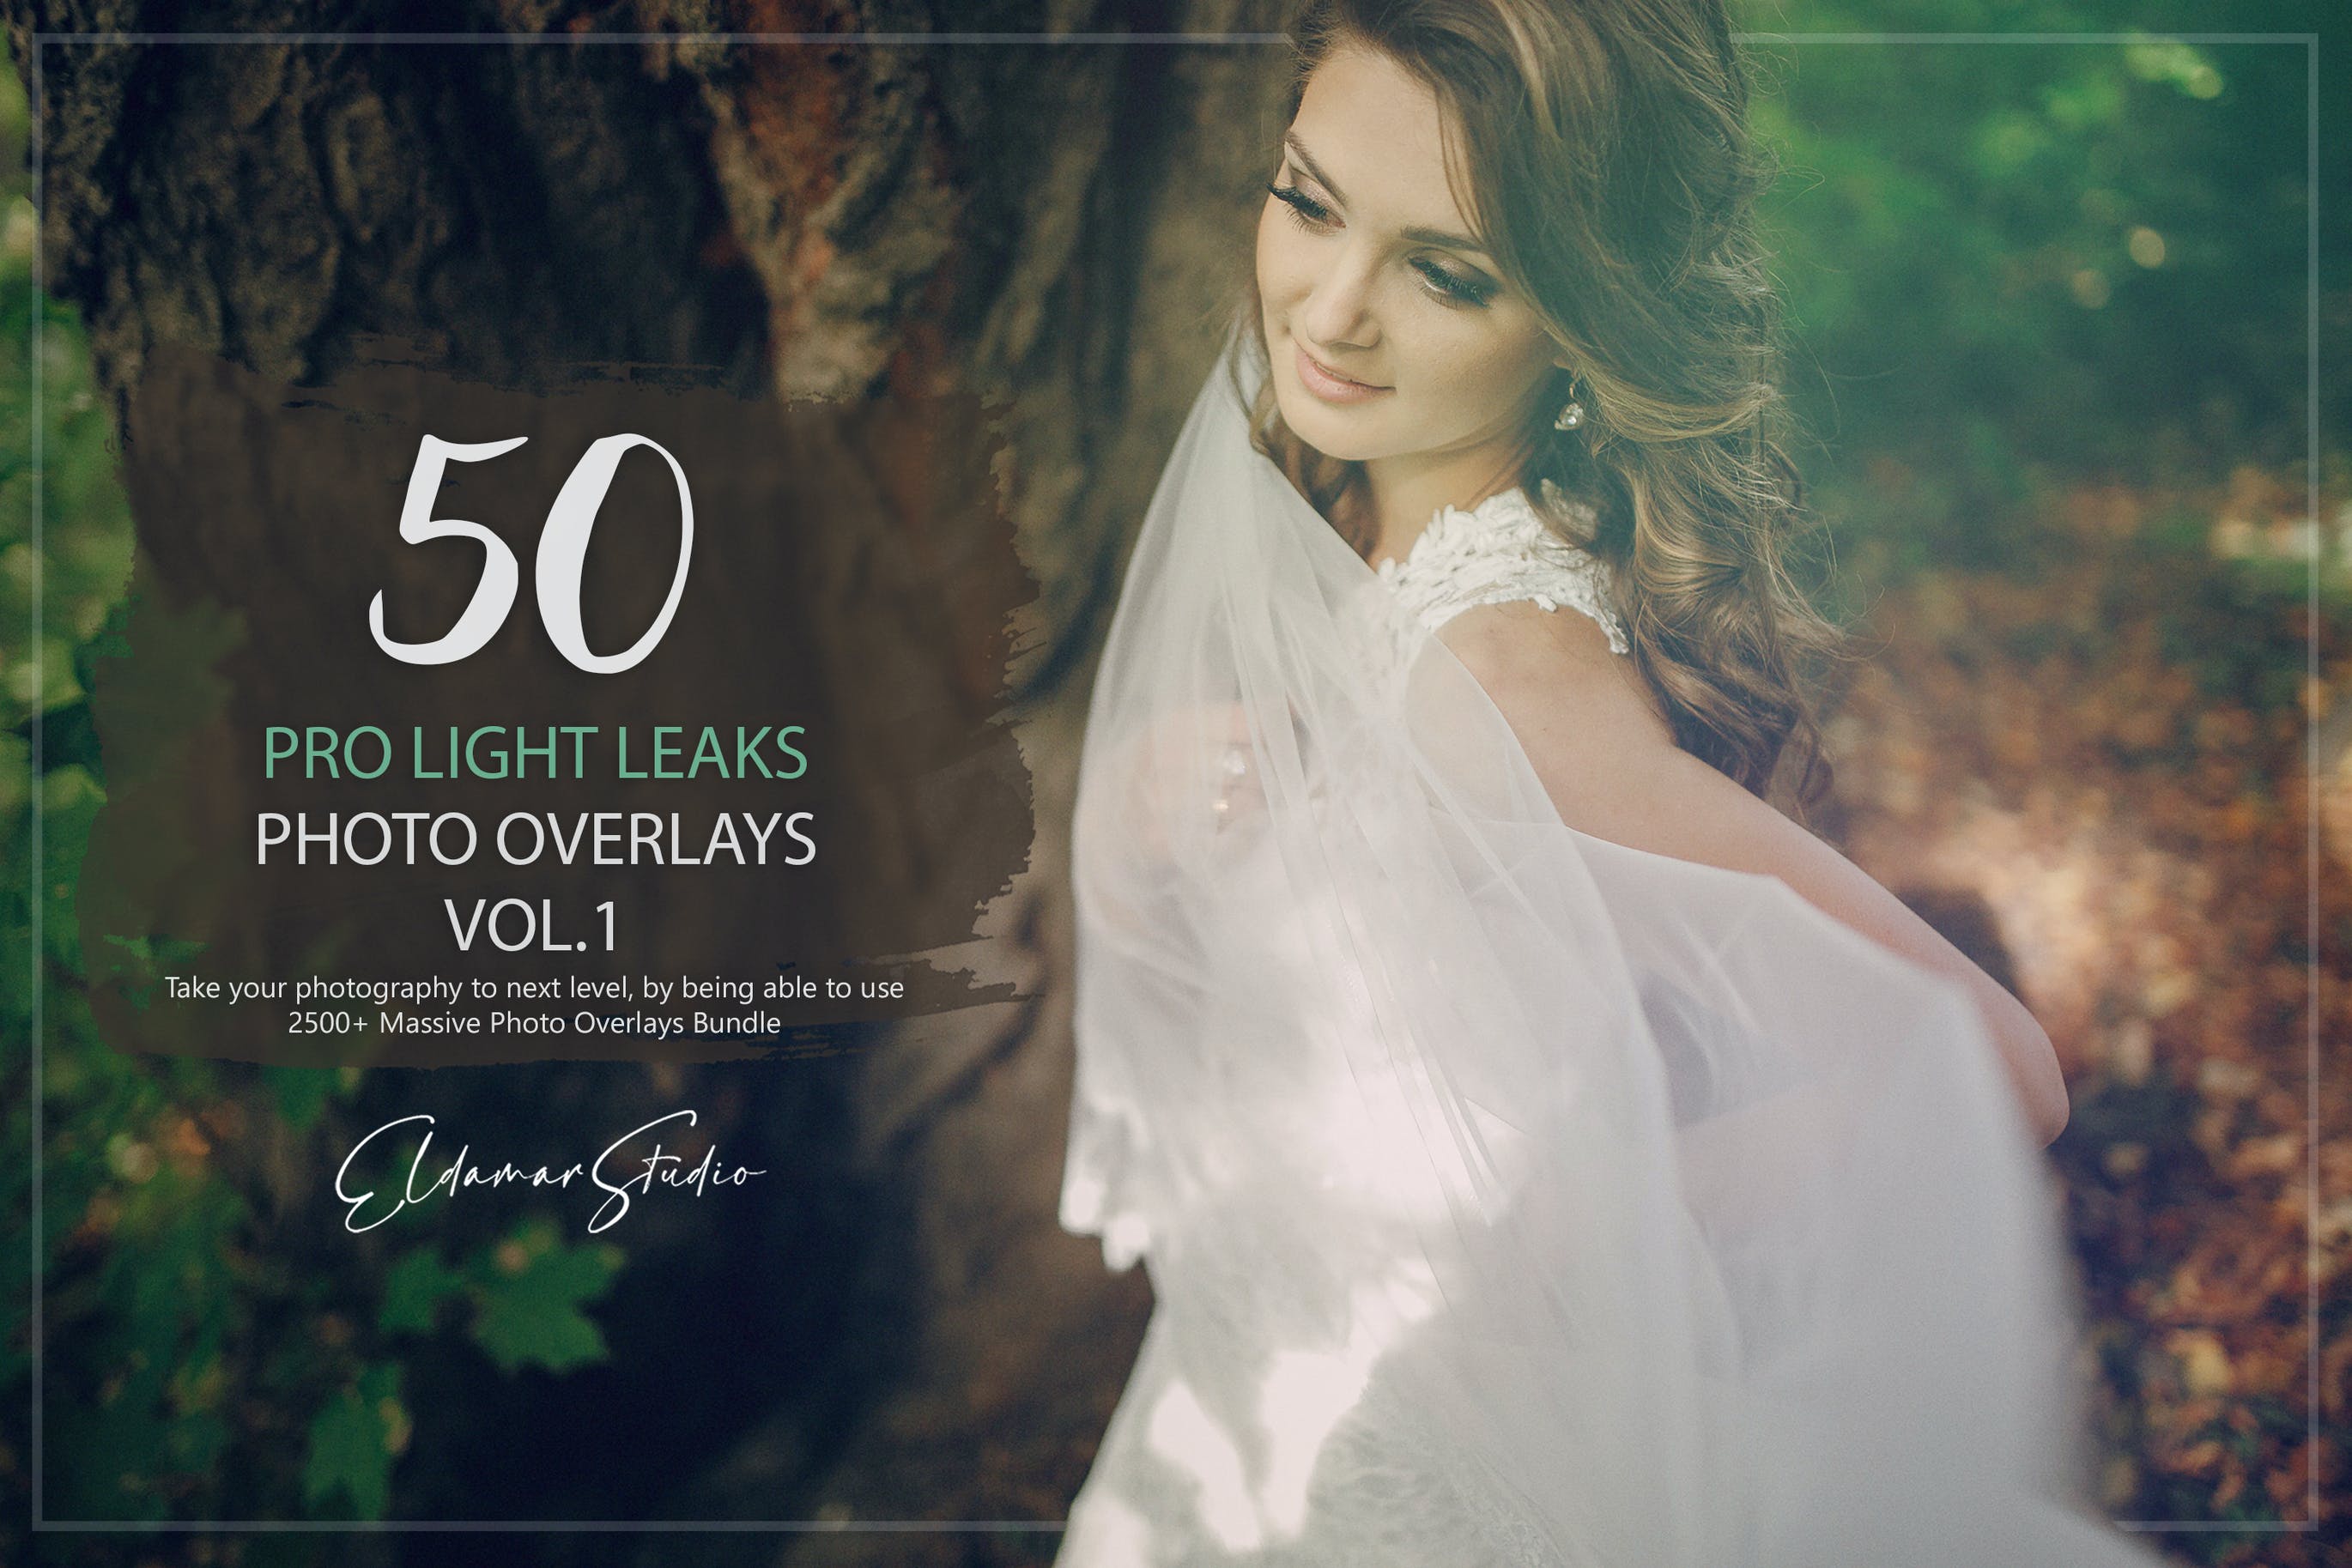 50个专业漏光效果照片叠层背景素材v1 50 Pro Light Leaks Photo Overlays – Vol. 1 图片素材 第1张